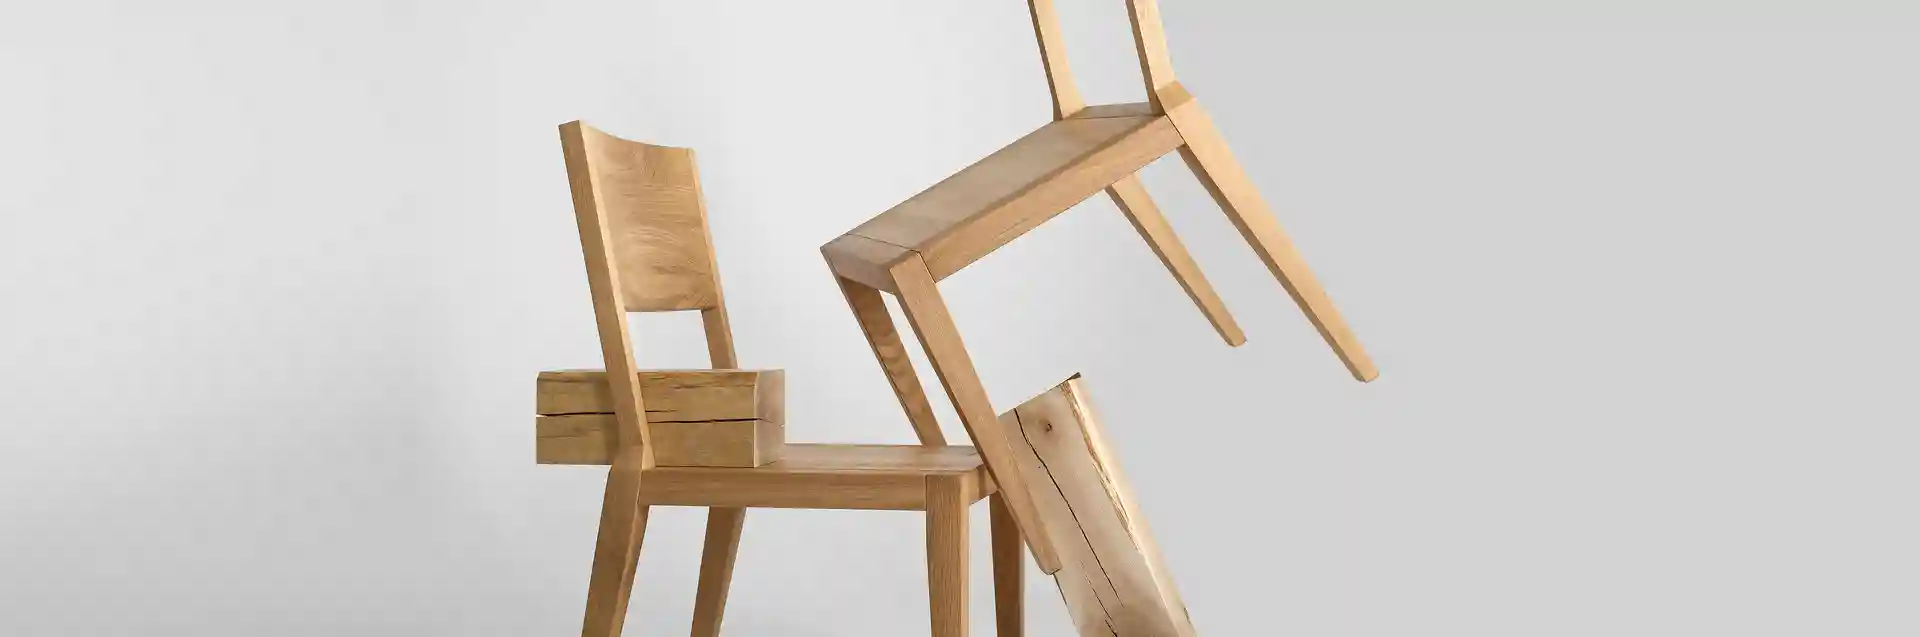 Krzesło drewniane dębowe MILONI AVANGARDE, Kolor: 03: Natural, Wymiary: Dł: 45 x Sz: 44 x Wys: 45 cm, polskie krzesła z drewna